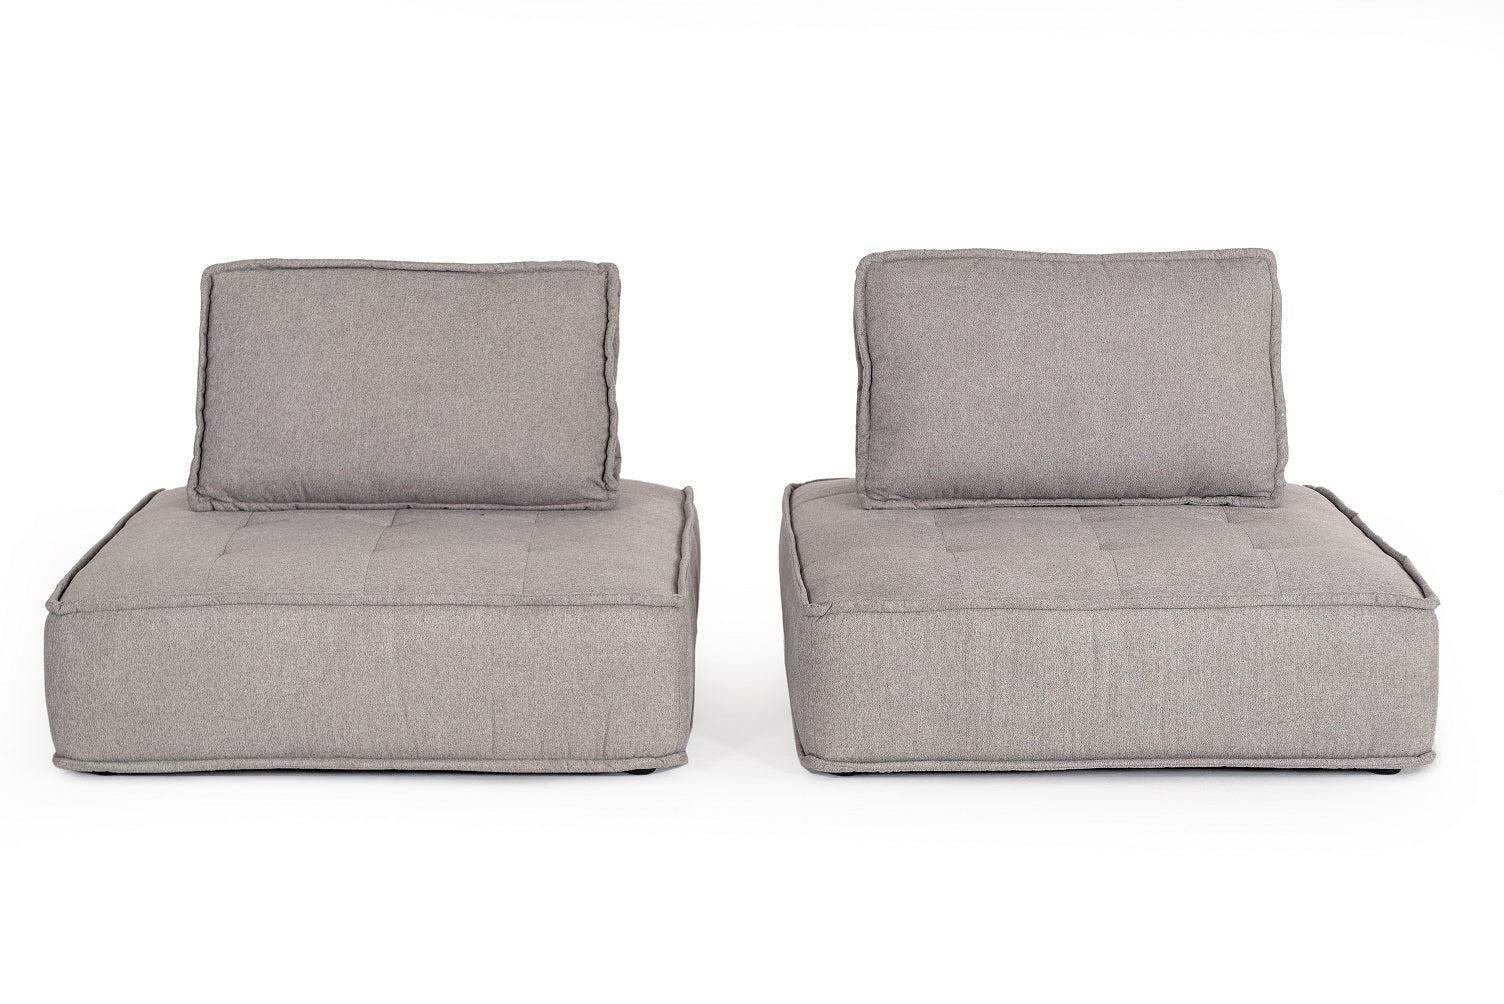 VIG Furniture Divani Casa Nolden Grey Fabric Modular Sectional Sofa